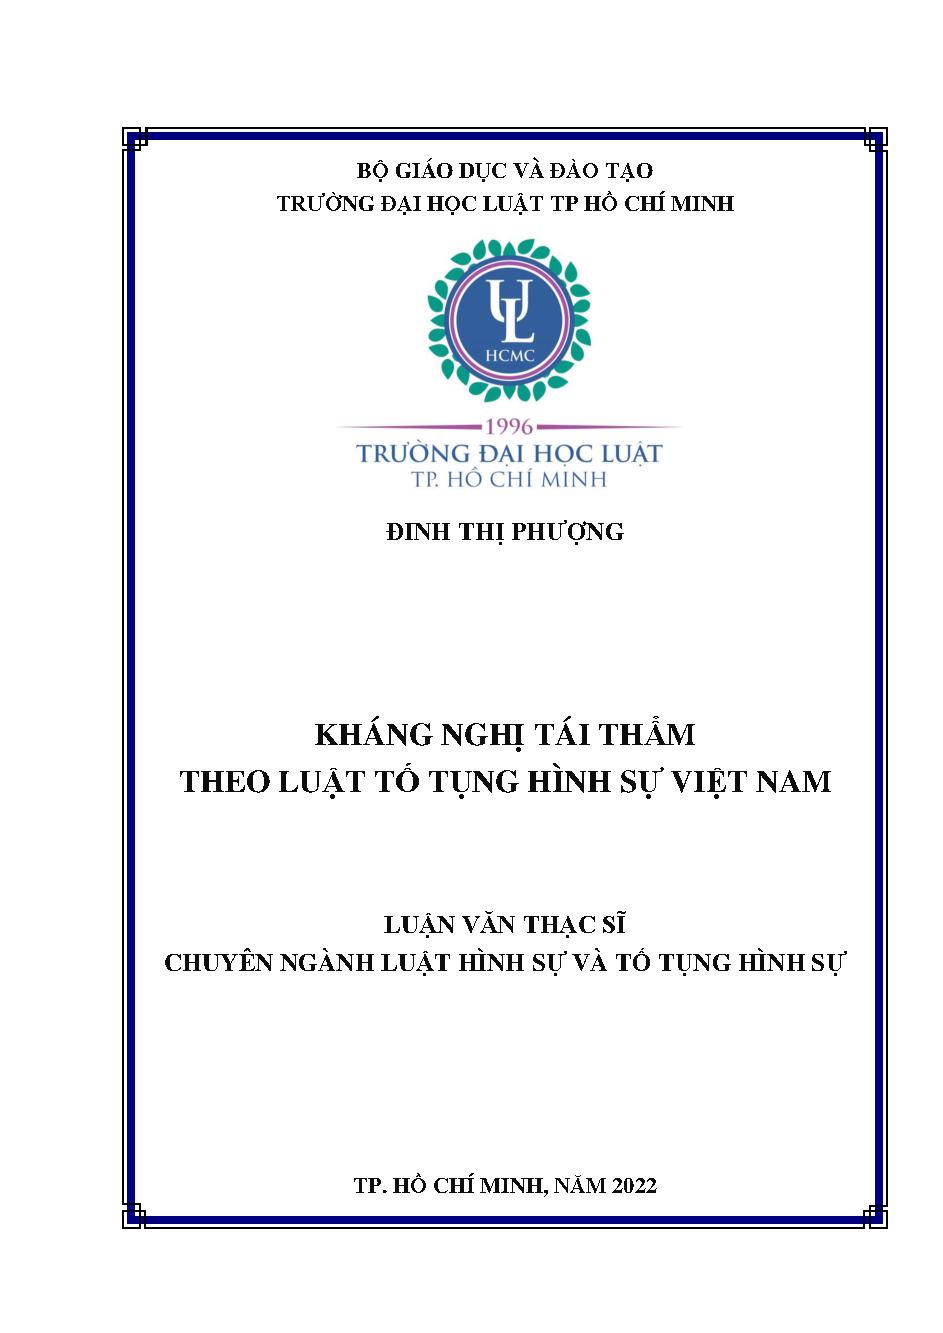 Kháng nghị tái thẩm theo luật tố tụng hình sự Việt Nam